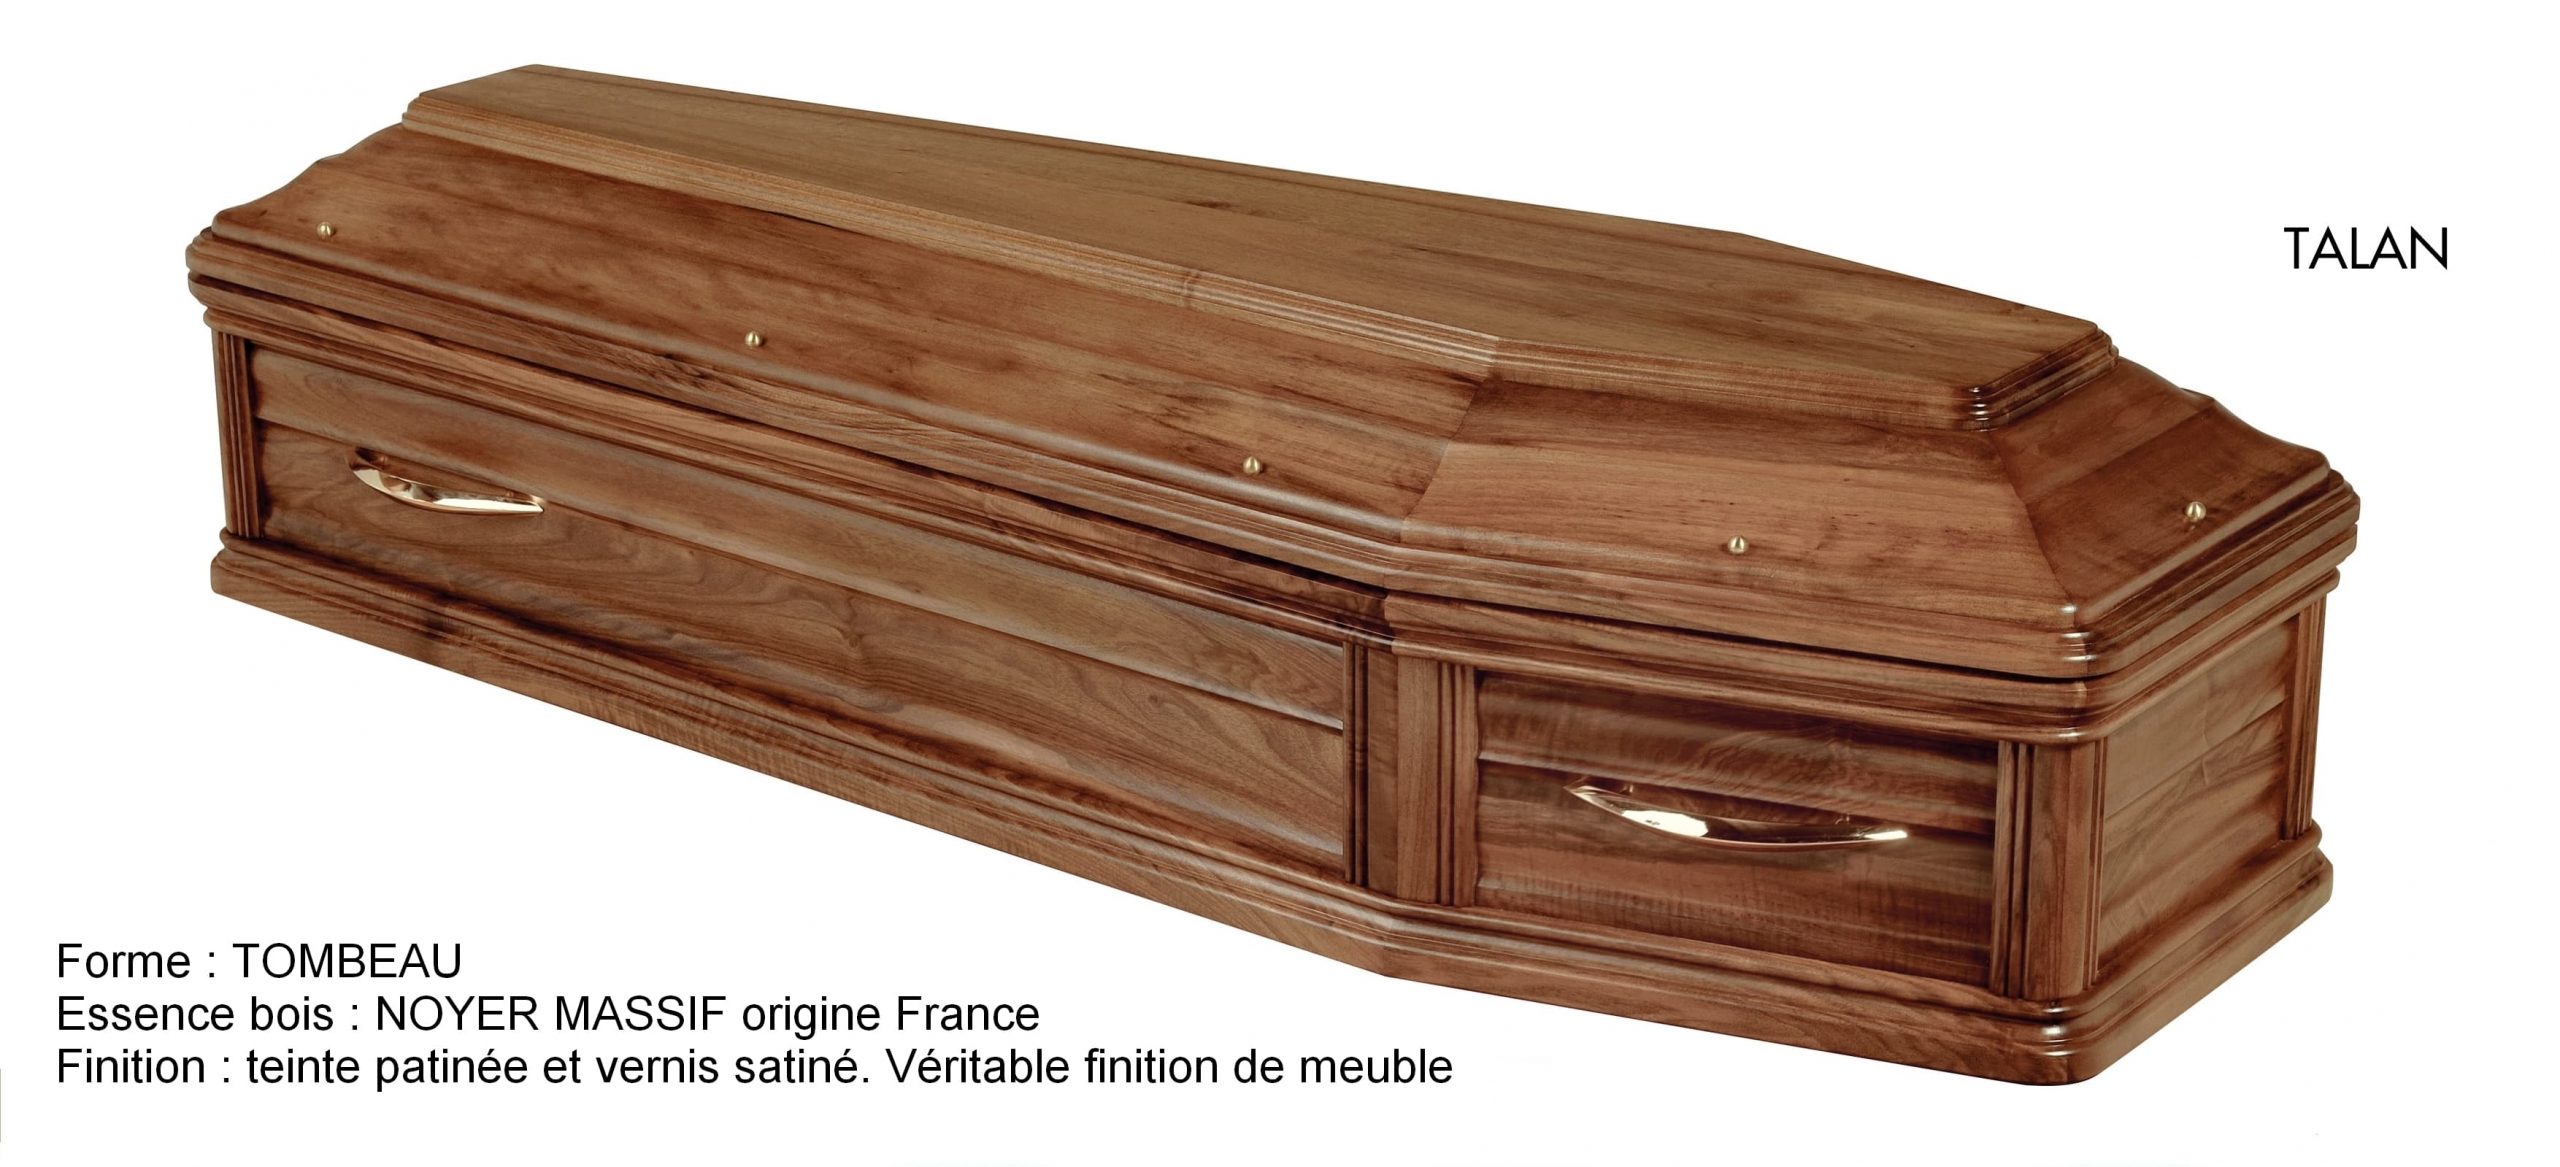 Cercueil TALAN, 3075€